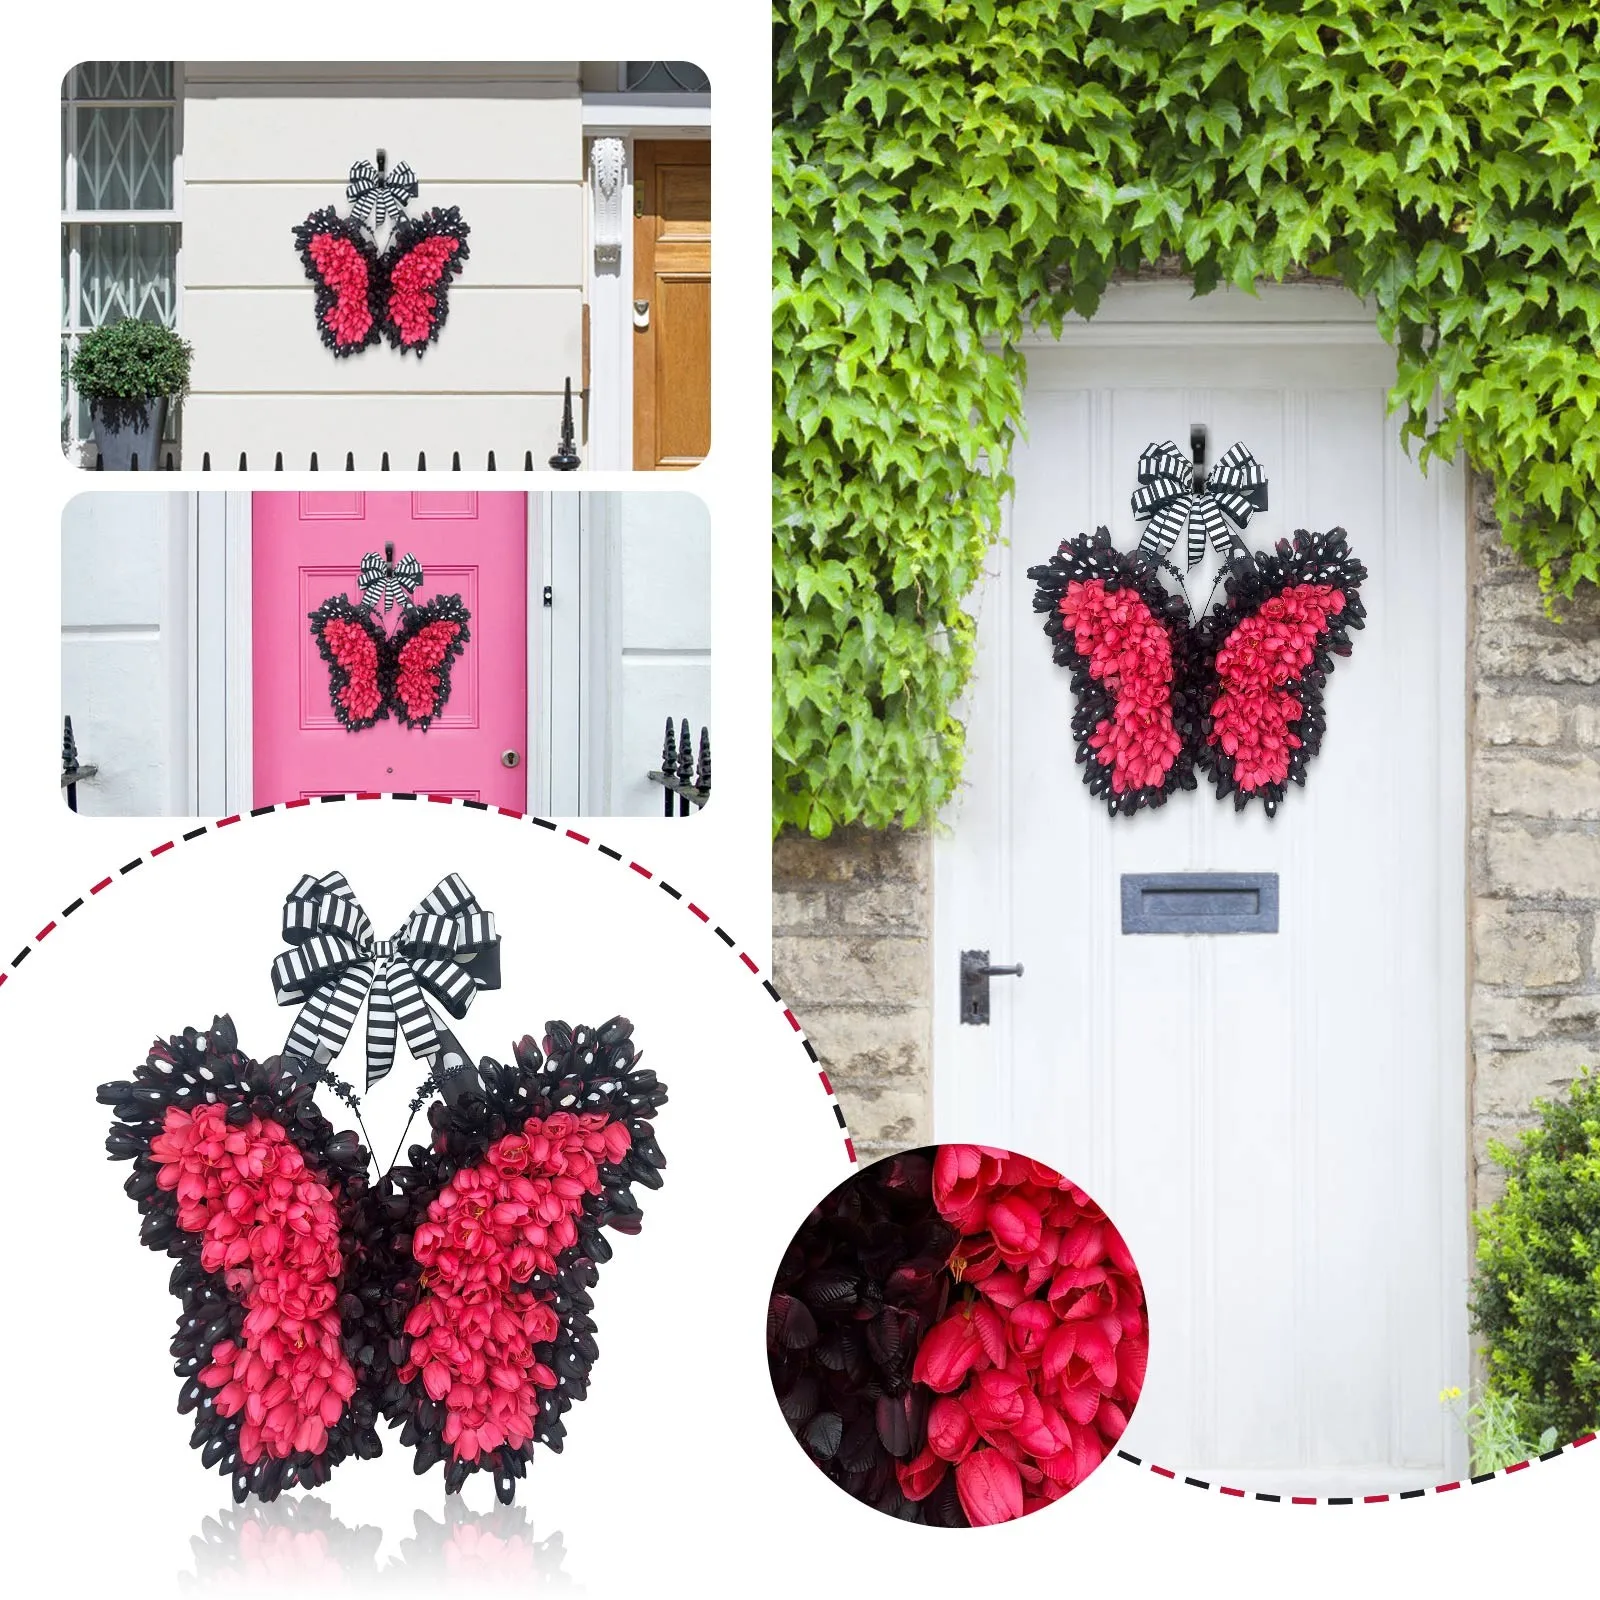 

Висячие тюльпаны бабочки дверь настенный венок гирлянда Весенняя подвесная дюймовая имитация тюльпанов венок оконные присоски